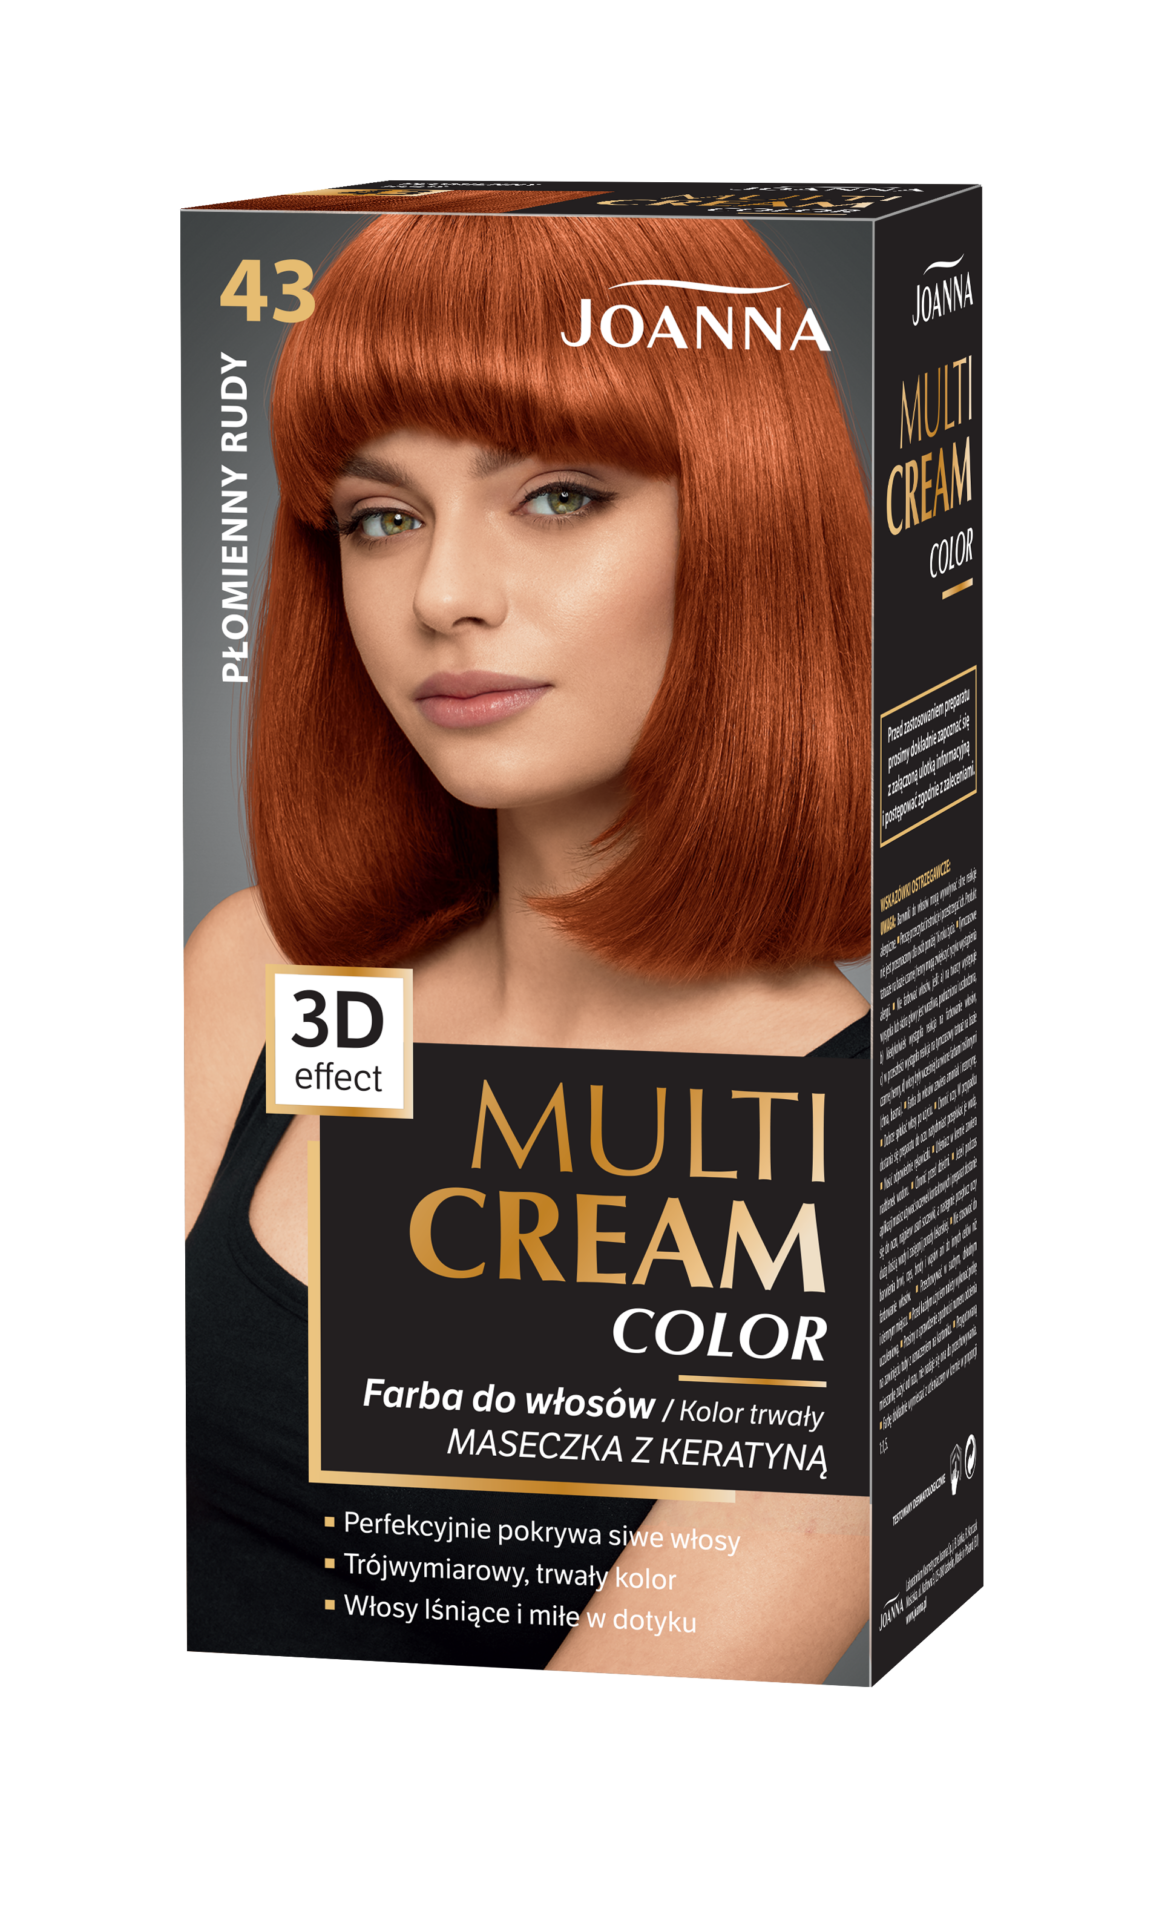 Trwała farba do włosów Joanna Multi Cream Color w odcieniu płomienny rudy nr 43